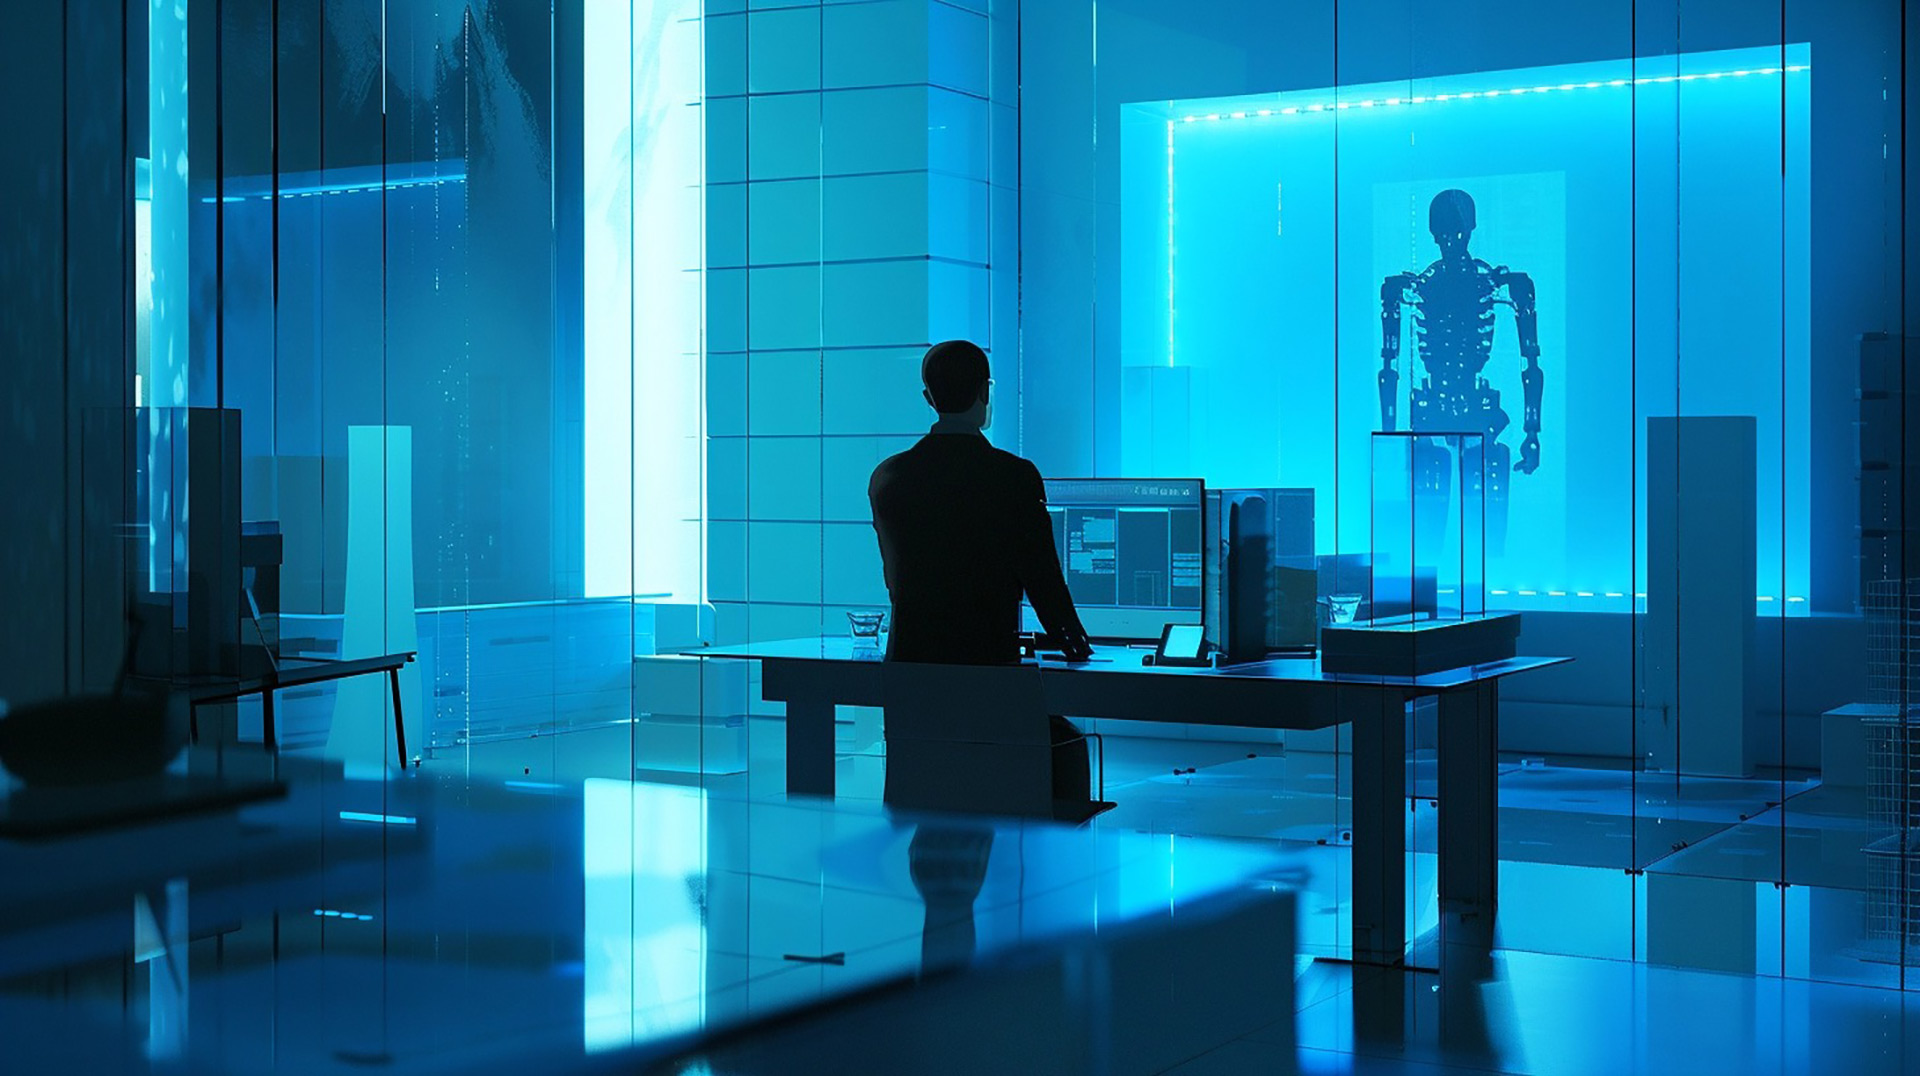 Cyberpunk Villains: Futuristic Gangster Art for Modern Desktops